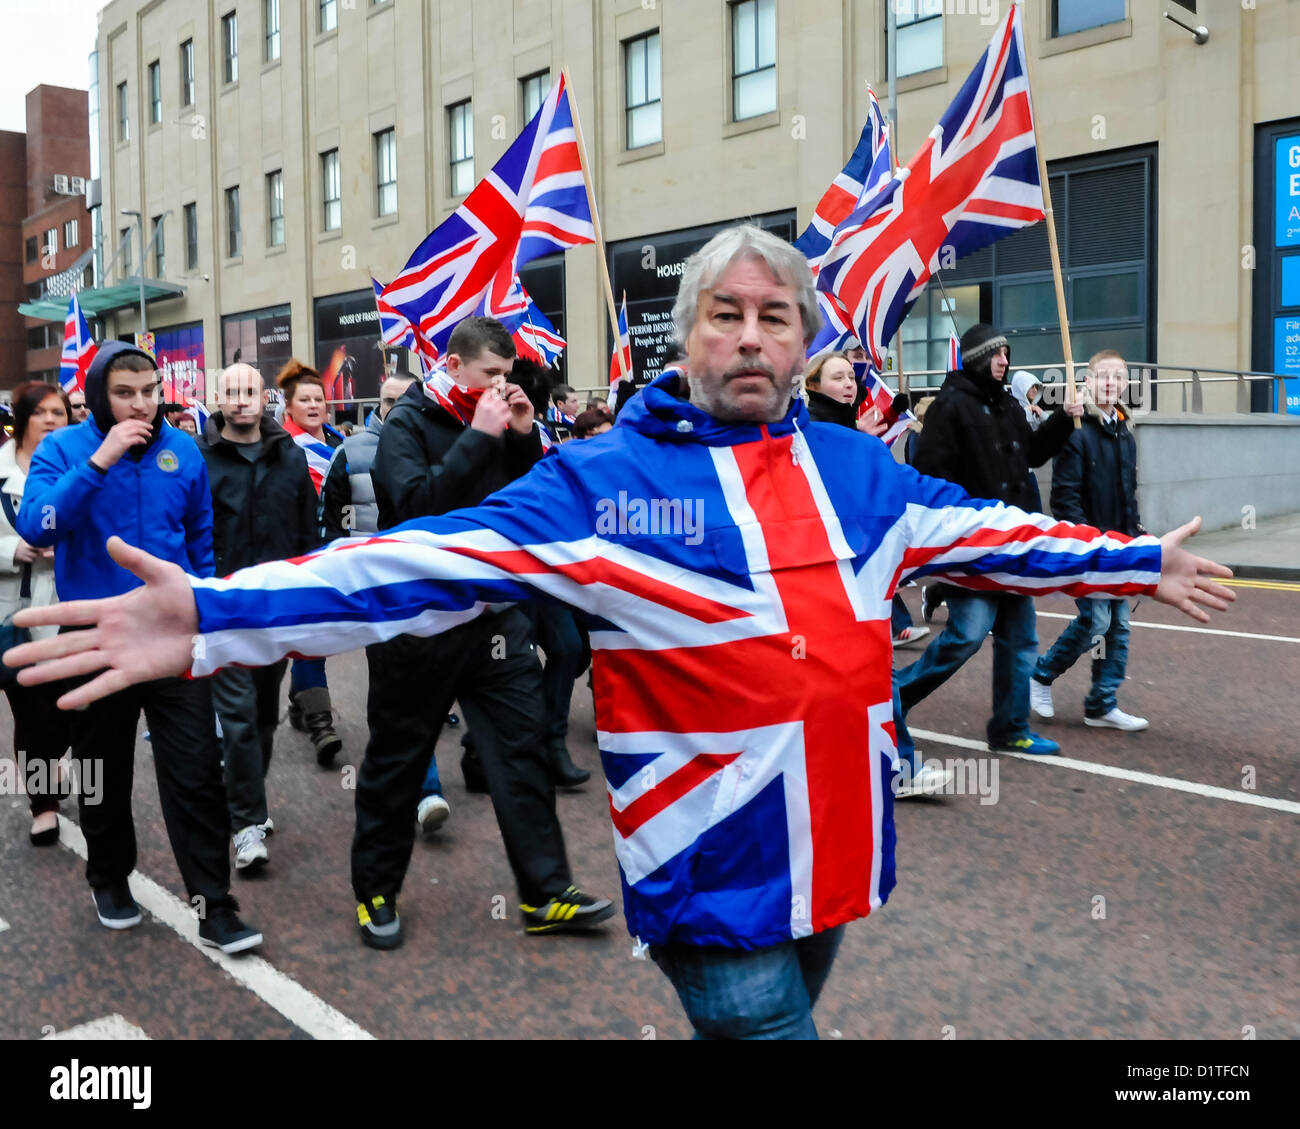 5 janvier 2013. Belfast, en Irlande du Nord - Sam McCrory, Président de la coalition protestante, portant un blouson Union Jack tend les bras pendant qu'il marche avec plus de 1 000 syndicalistes lors d'une solution pacifique, mais tendue, manifestation à Belfast. Les routes ont été fermées pendant environ 60 minutes alors que les manifestants agitaient des drapeaux de l'Union et applaudi. Les manifestations suivez la décision au début de décembre que le drapeau de l'Union européenne ne doit être survolé Belfast City Hall sur 15 jours de «désigné. Banque D'Images